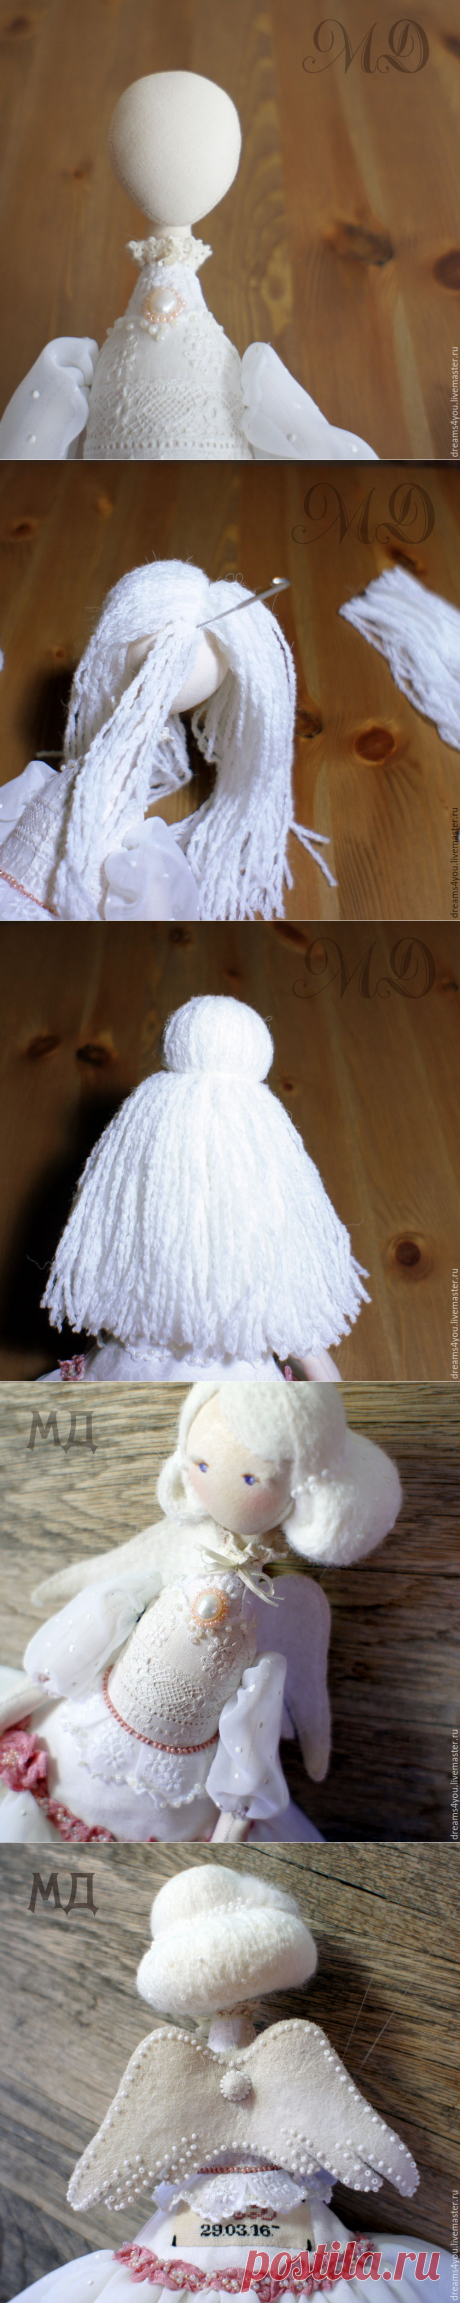 Создаем для куколки прическу из шнуровой пряжи - Ярмарка Мастеров - ручная работа, handmade